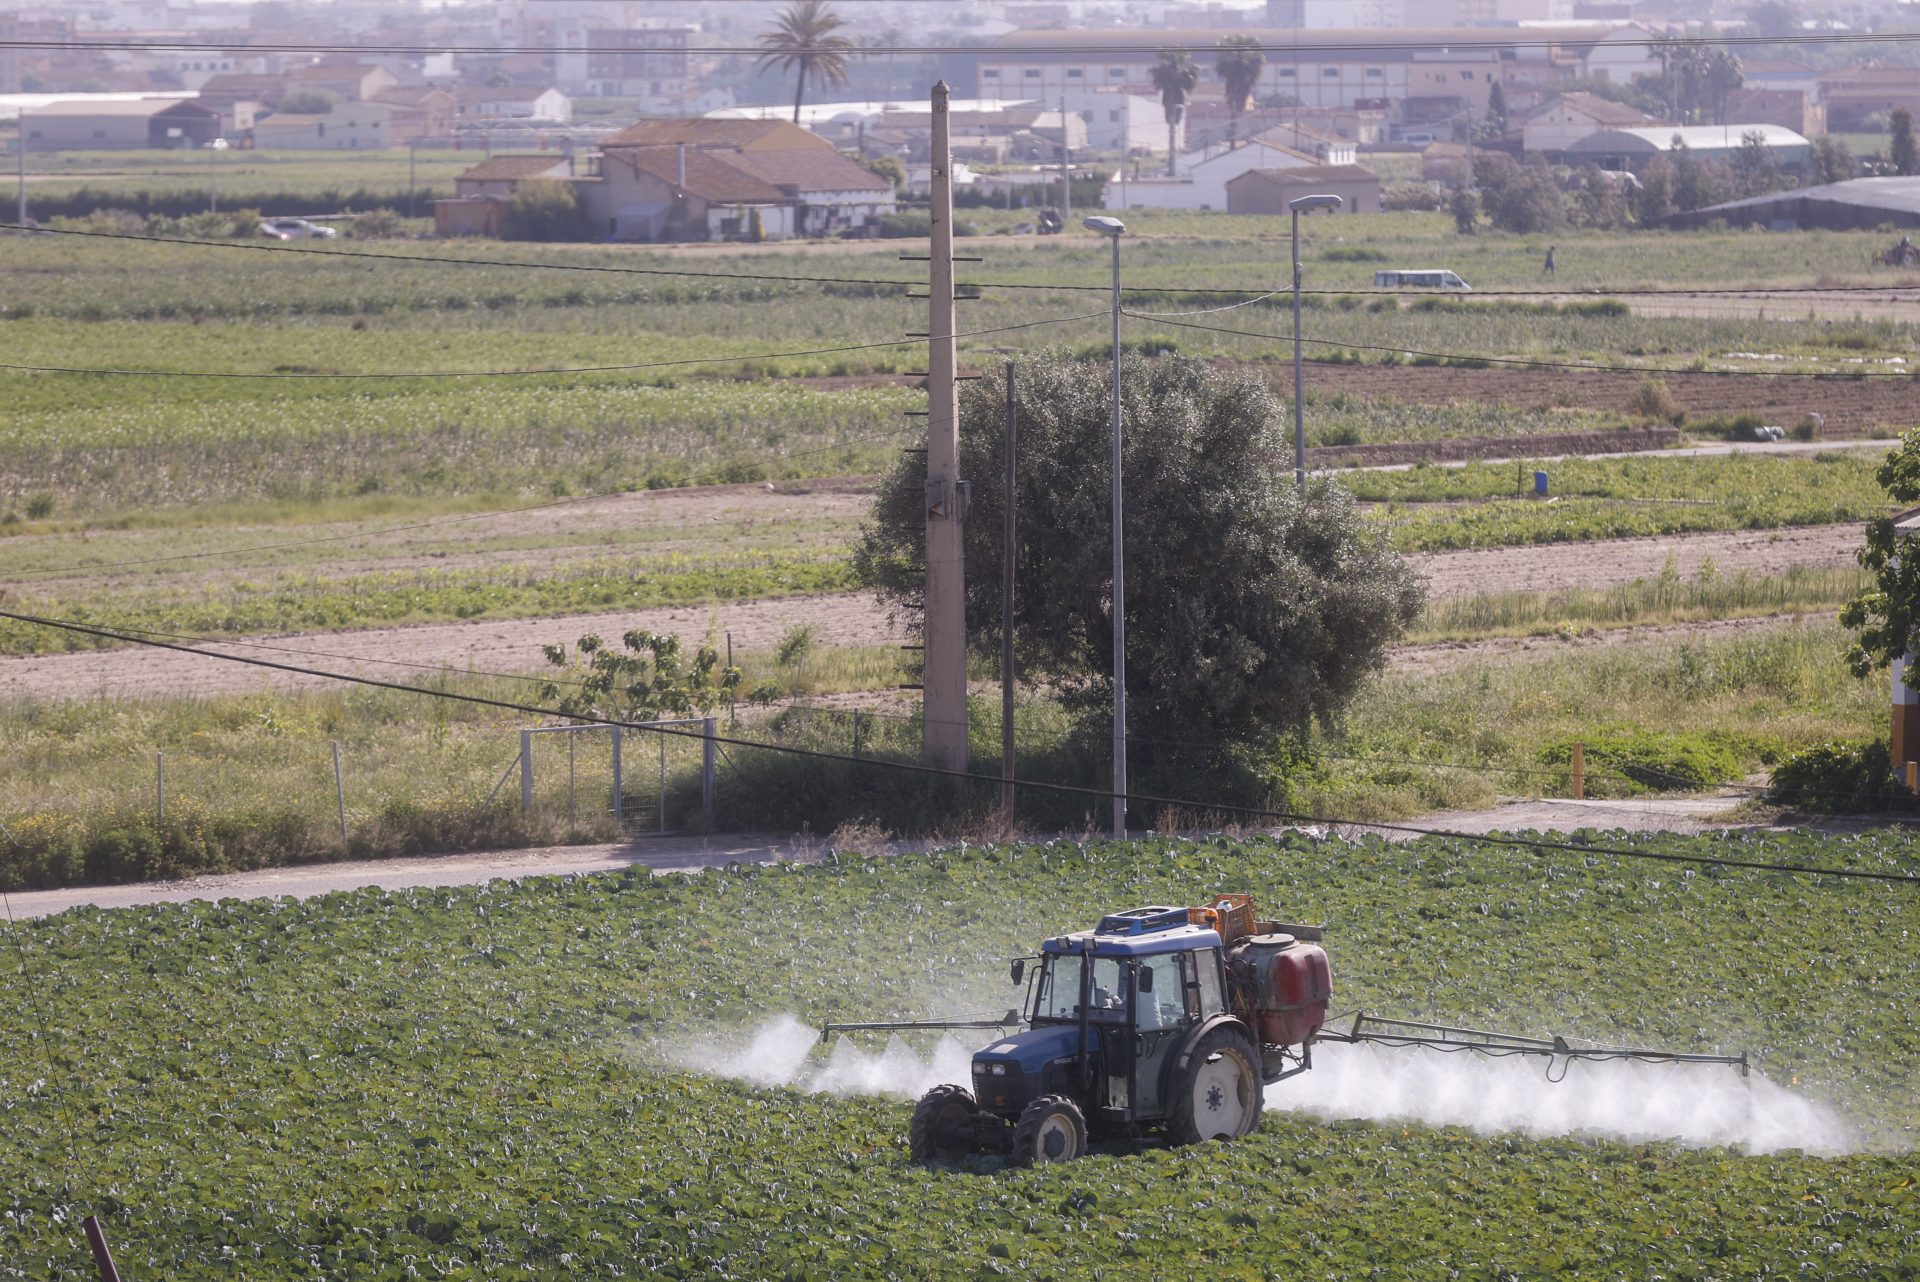 Un agricultor fumiga con su tractor un campo de hortalizas en el área metropolitana de Valencia. Efeagro/Kai Forsterling